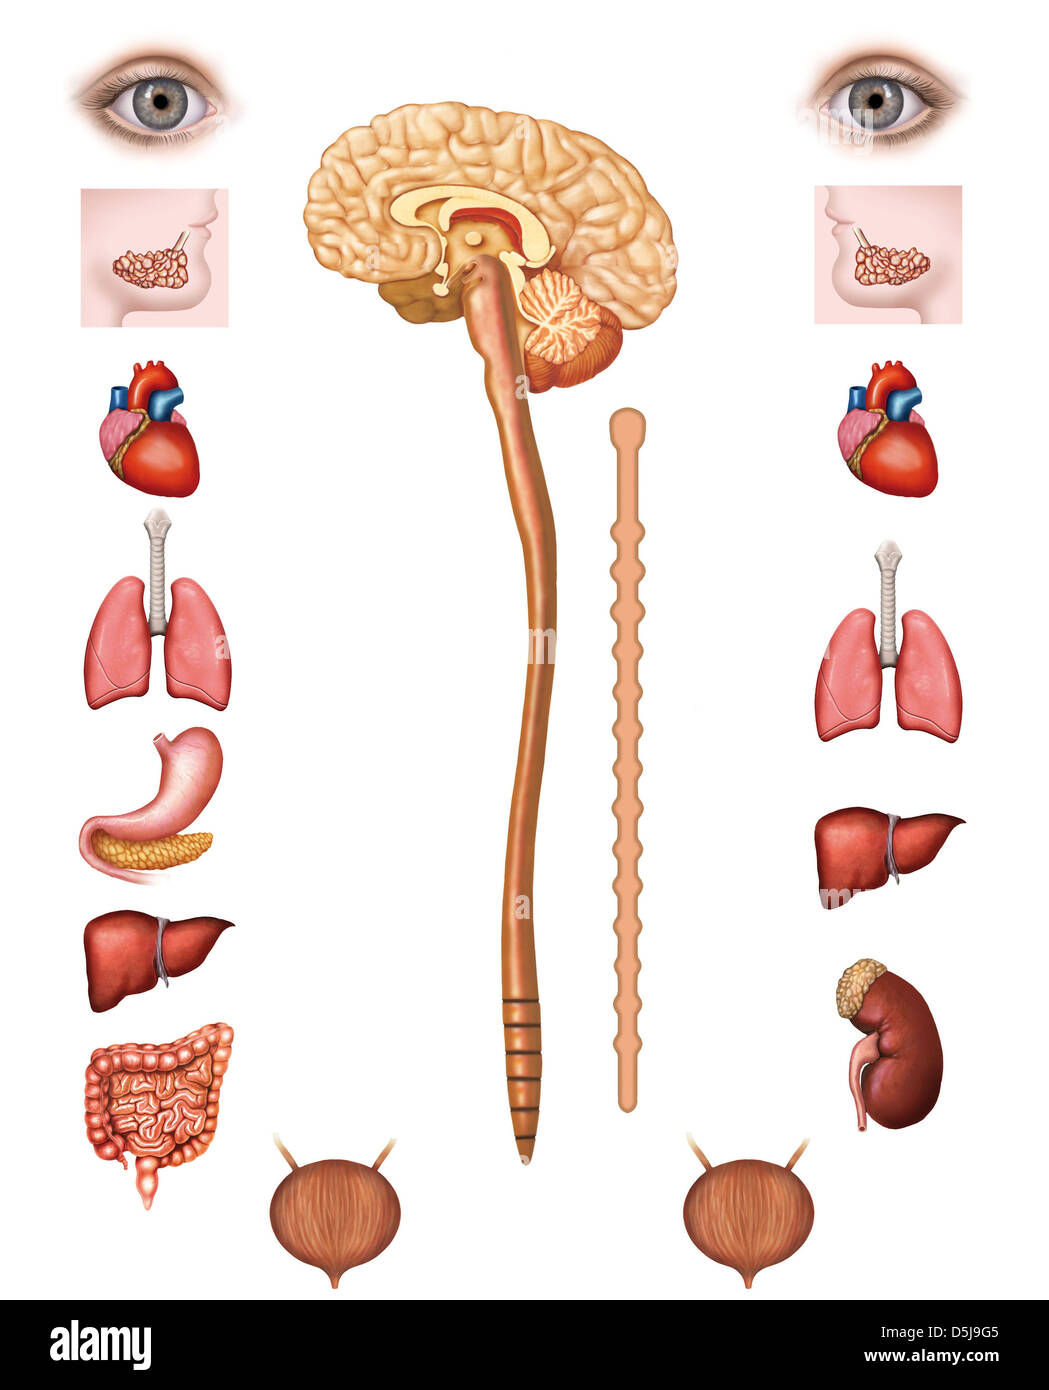 Structure du système nerveux parasympathique Banque D'Images